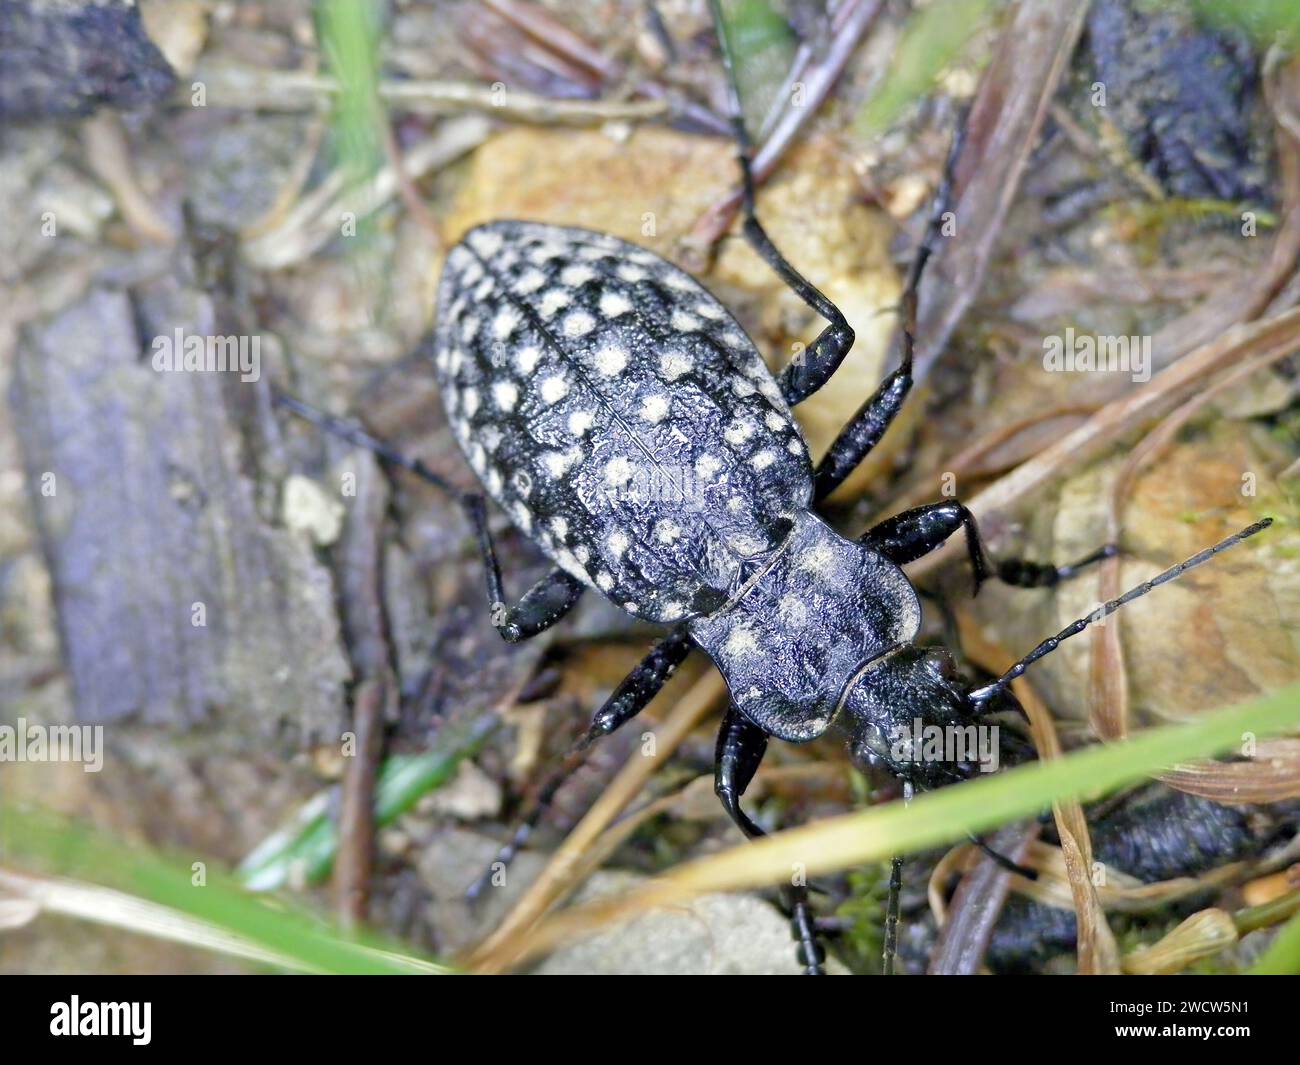 Carabus variolosus eine Art des schwarzfarbenen Bodenkäfers Carabidae. Ein seltenes und geschütztes Insekt, Nature 2000. Stockfoto